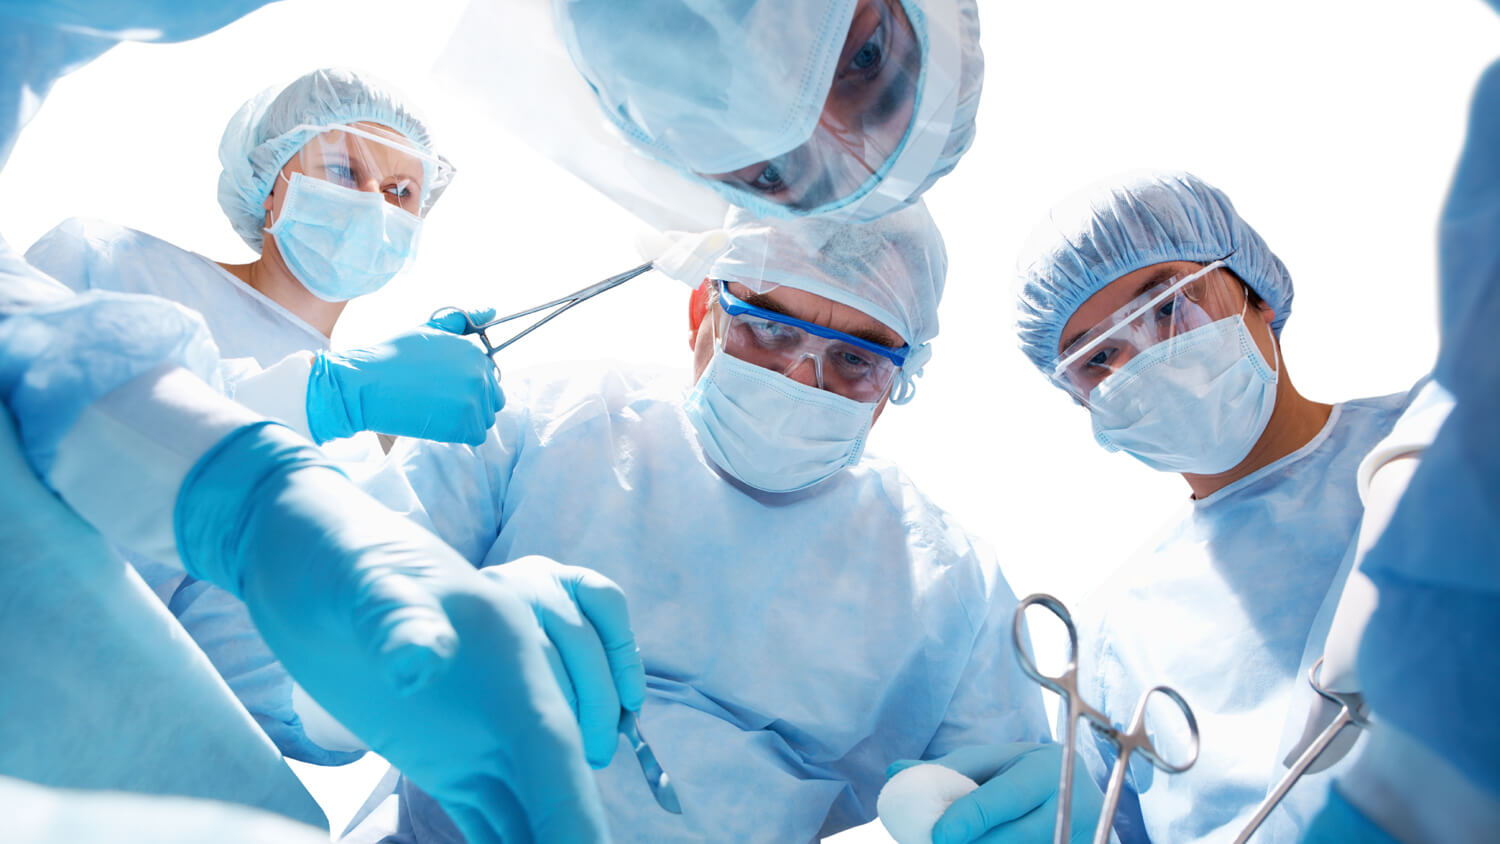 Операция аппендэктомии не является сложной для современных хирургов 